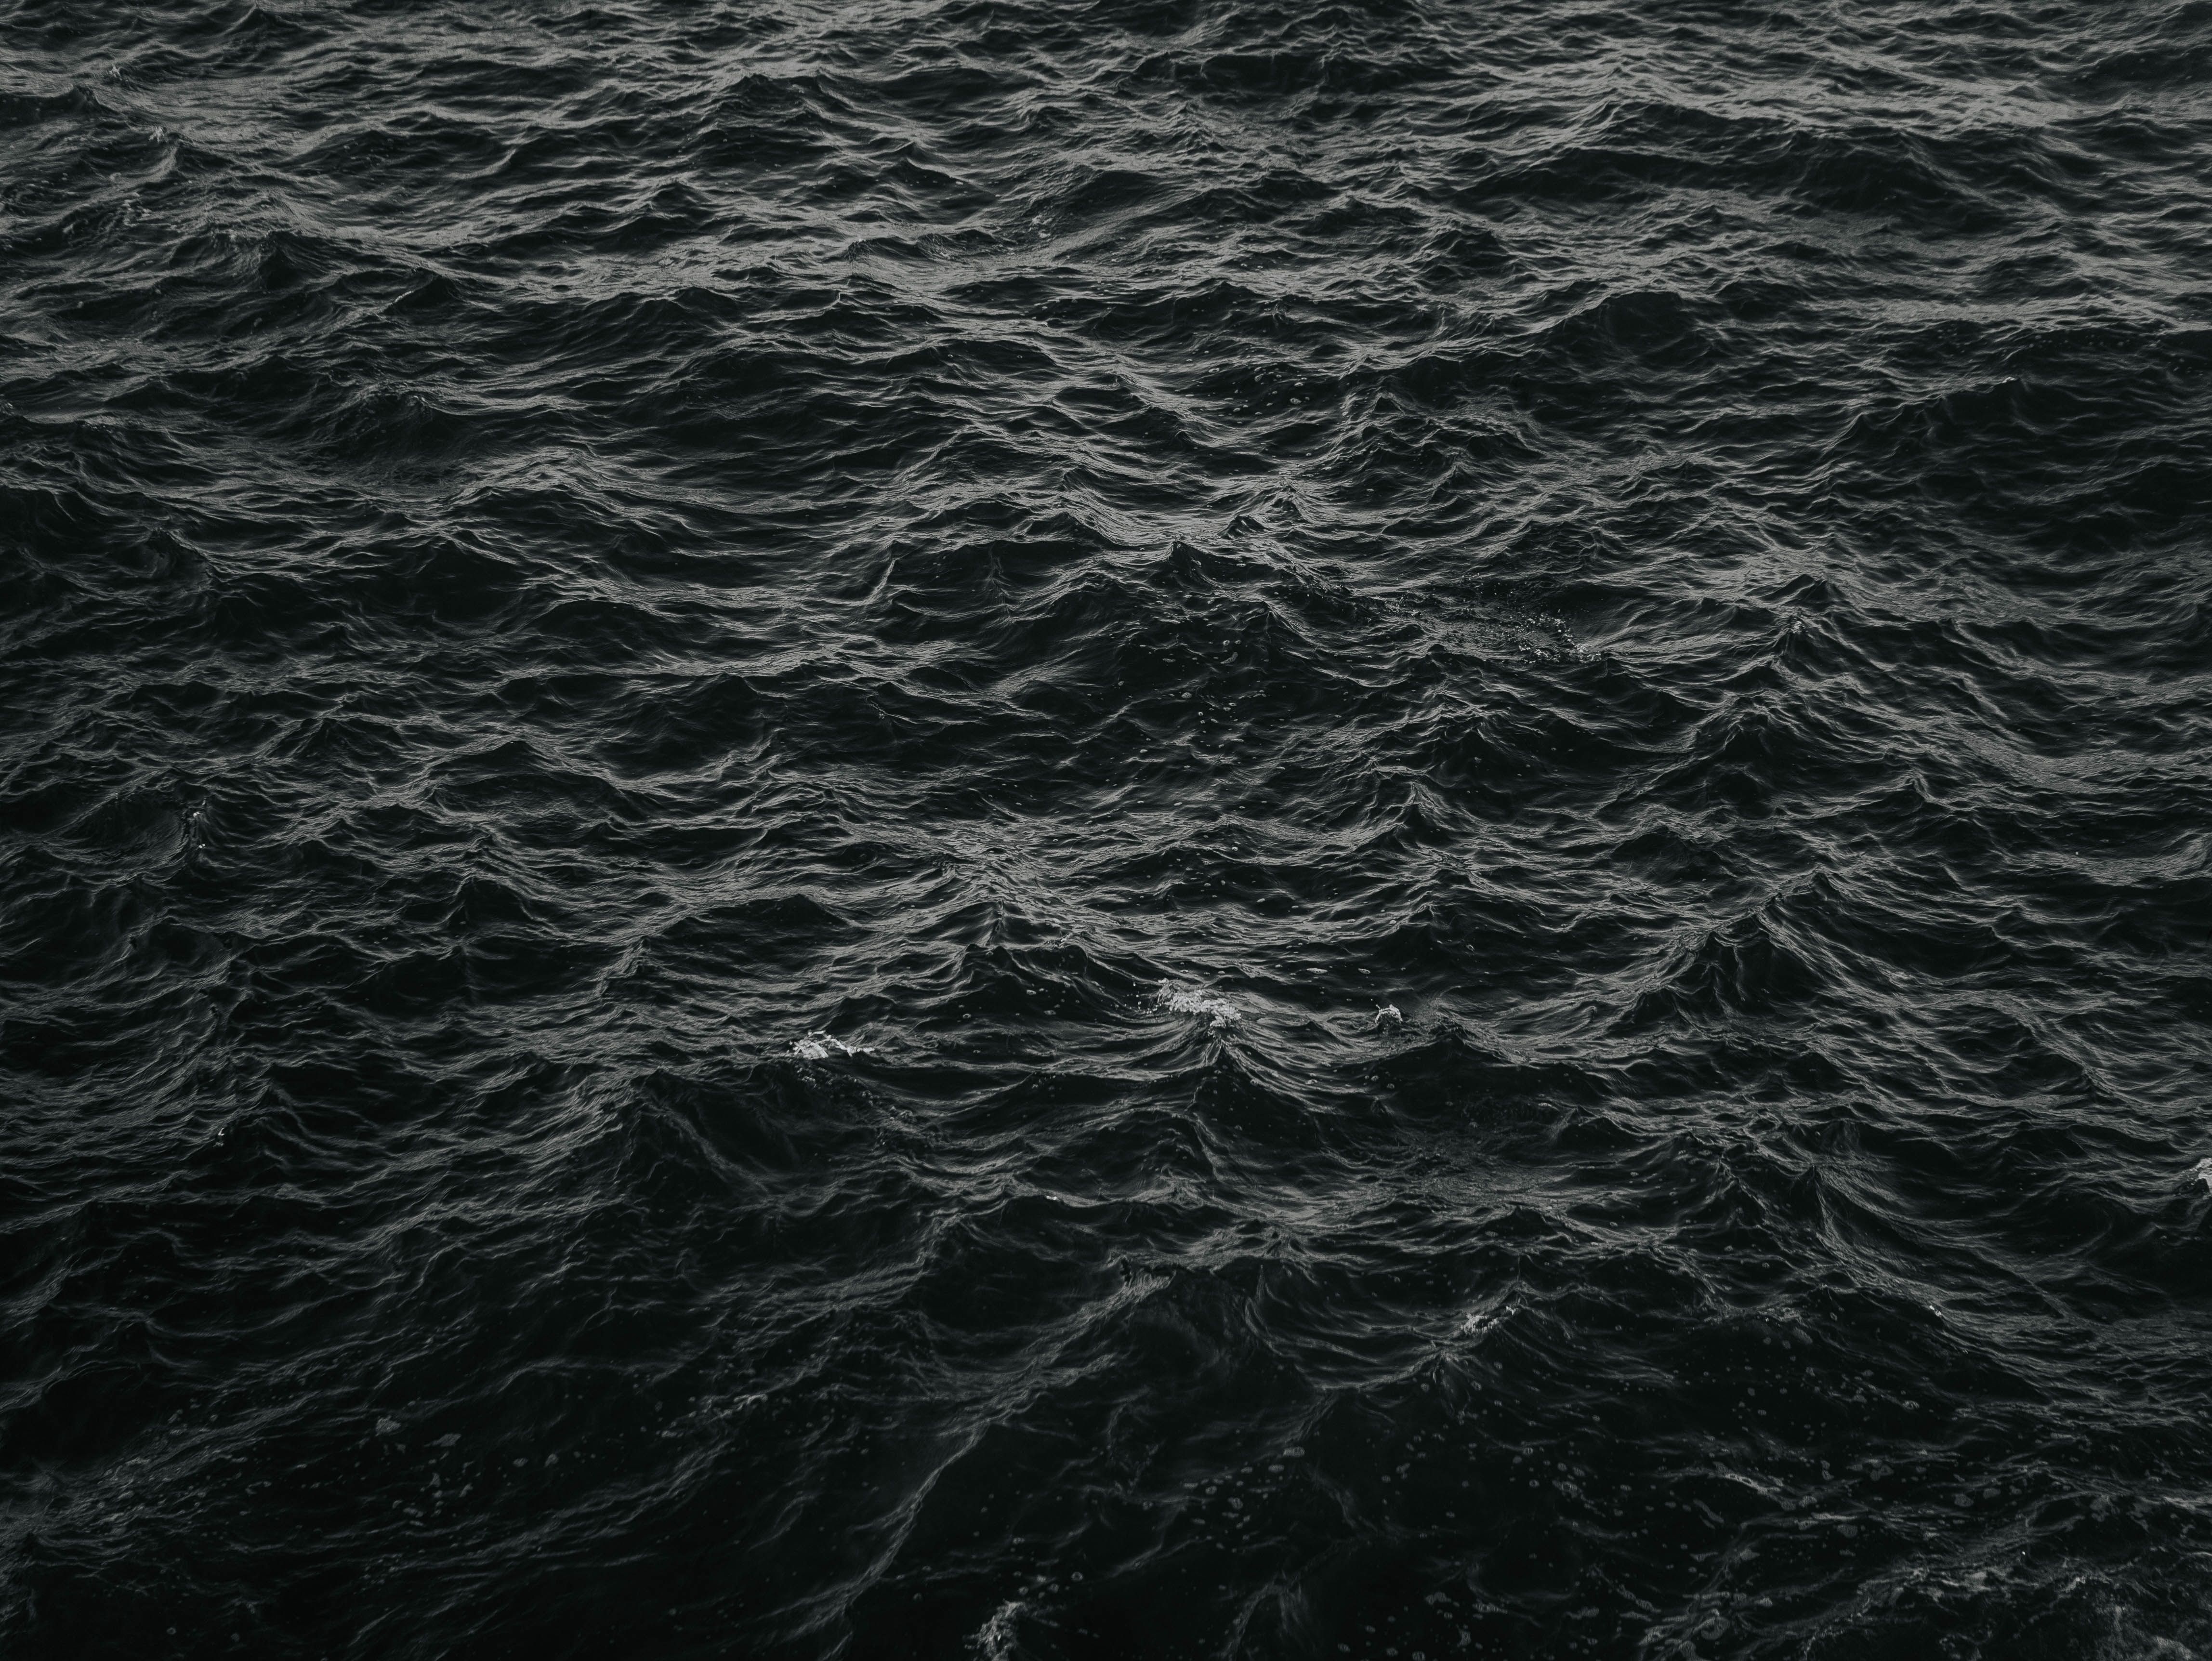  Schwarze Hintergrundbild 4592x3448. Kostenlose Hintergrundbilder Wasser, Schwarz, Meer, Atmosphäre, Muster, Bilder Für Ihren Desktop Und Fotos